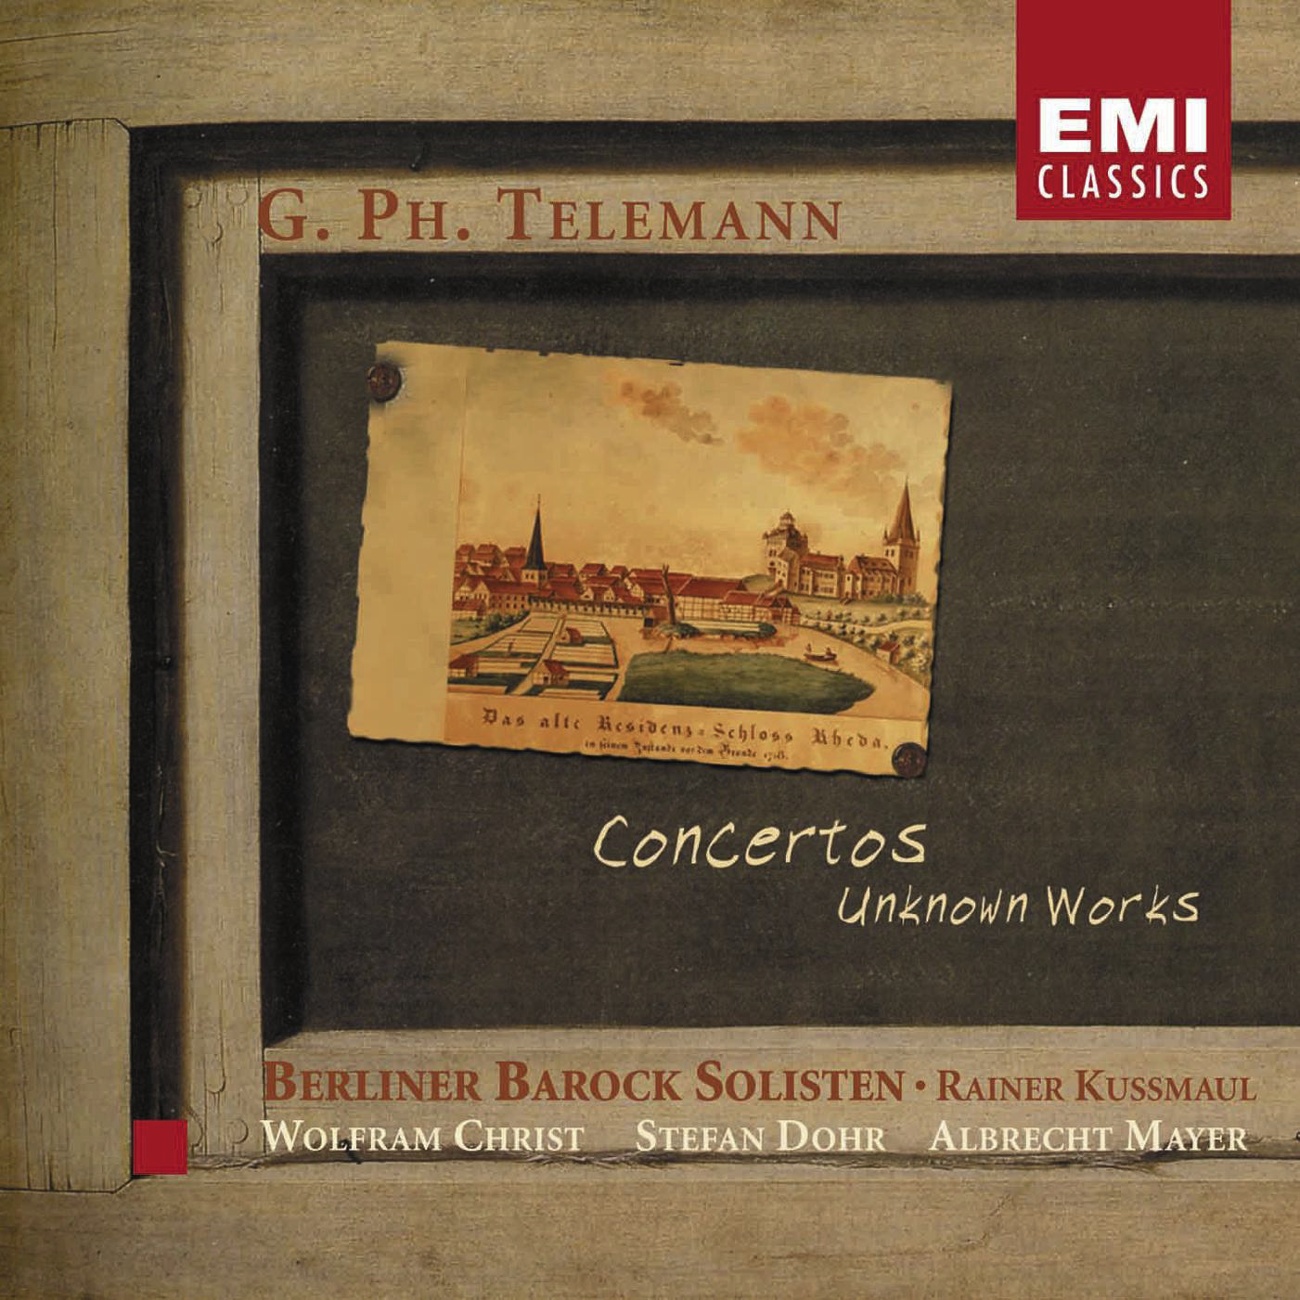 Concerto for Viola, Strings and basso continuo in G: presto